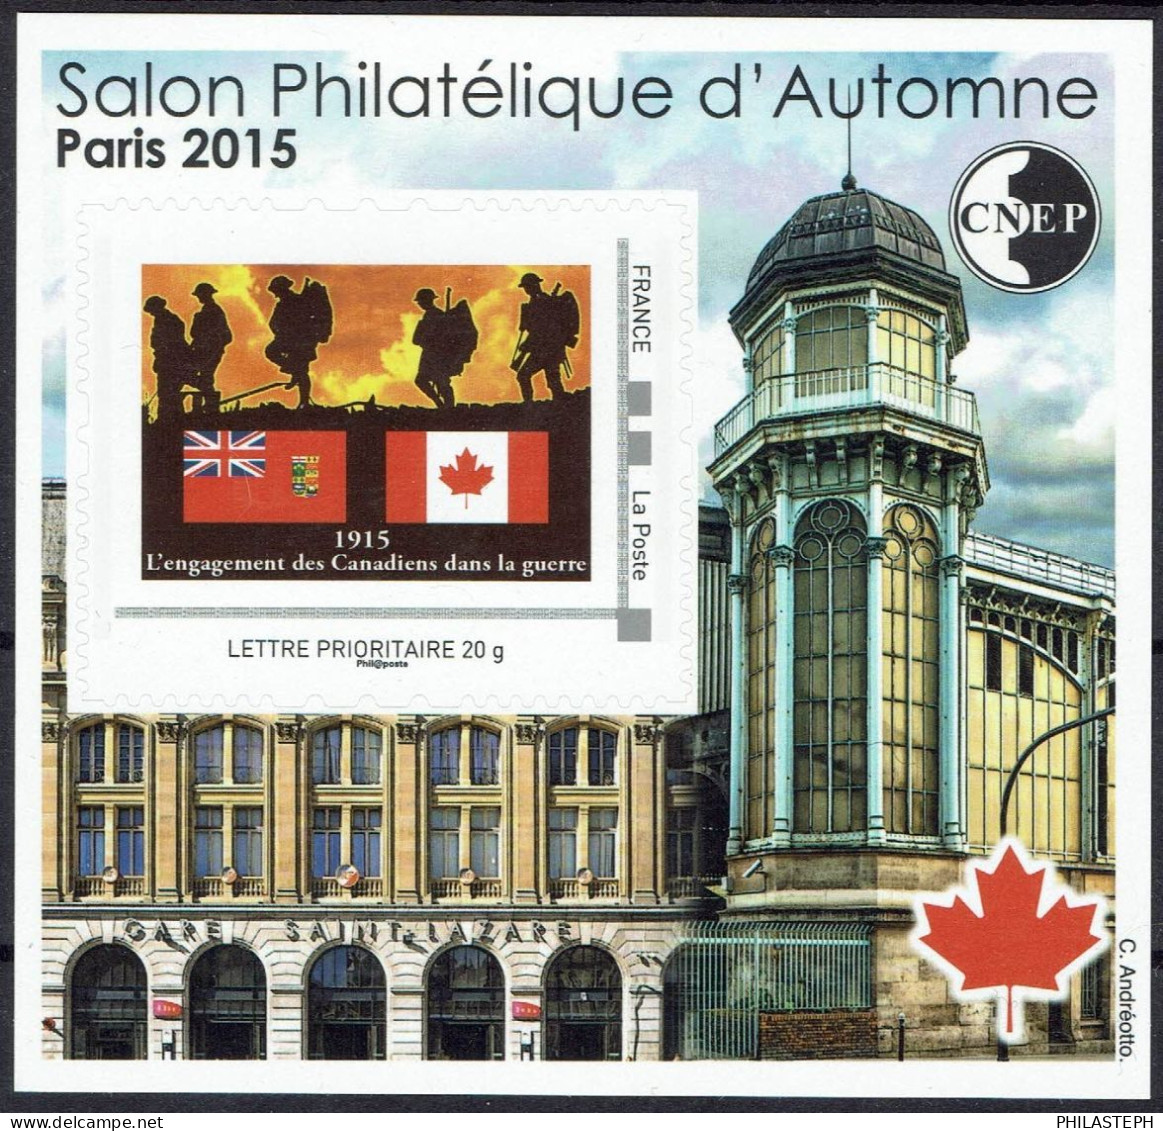 FRANCE BLOC CNEP 69 2015 - Salon Philatélique D'Automne à Paris - Gare Saint-Lazare - Engagement Des Canadiens Dans ... - CNEP